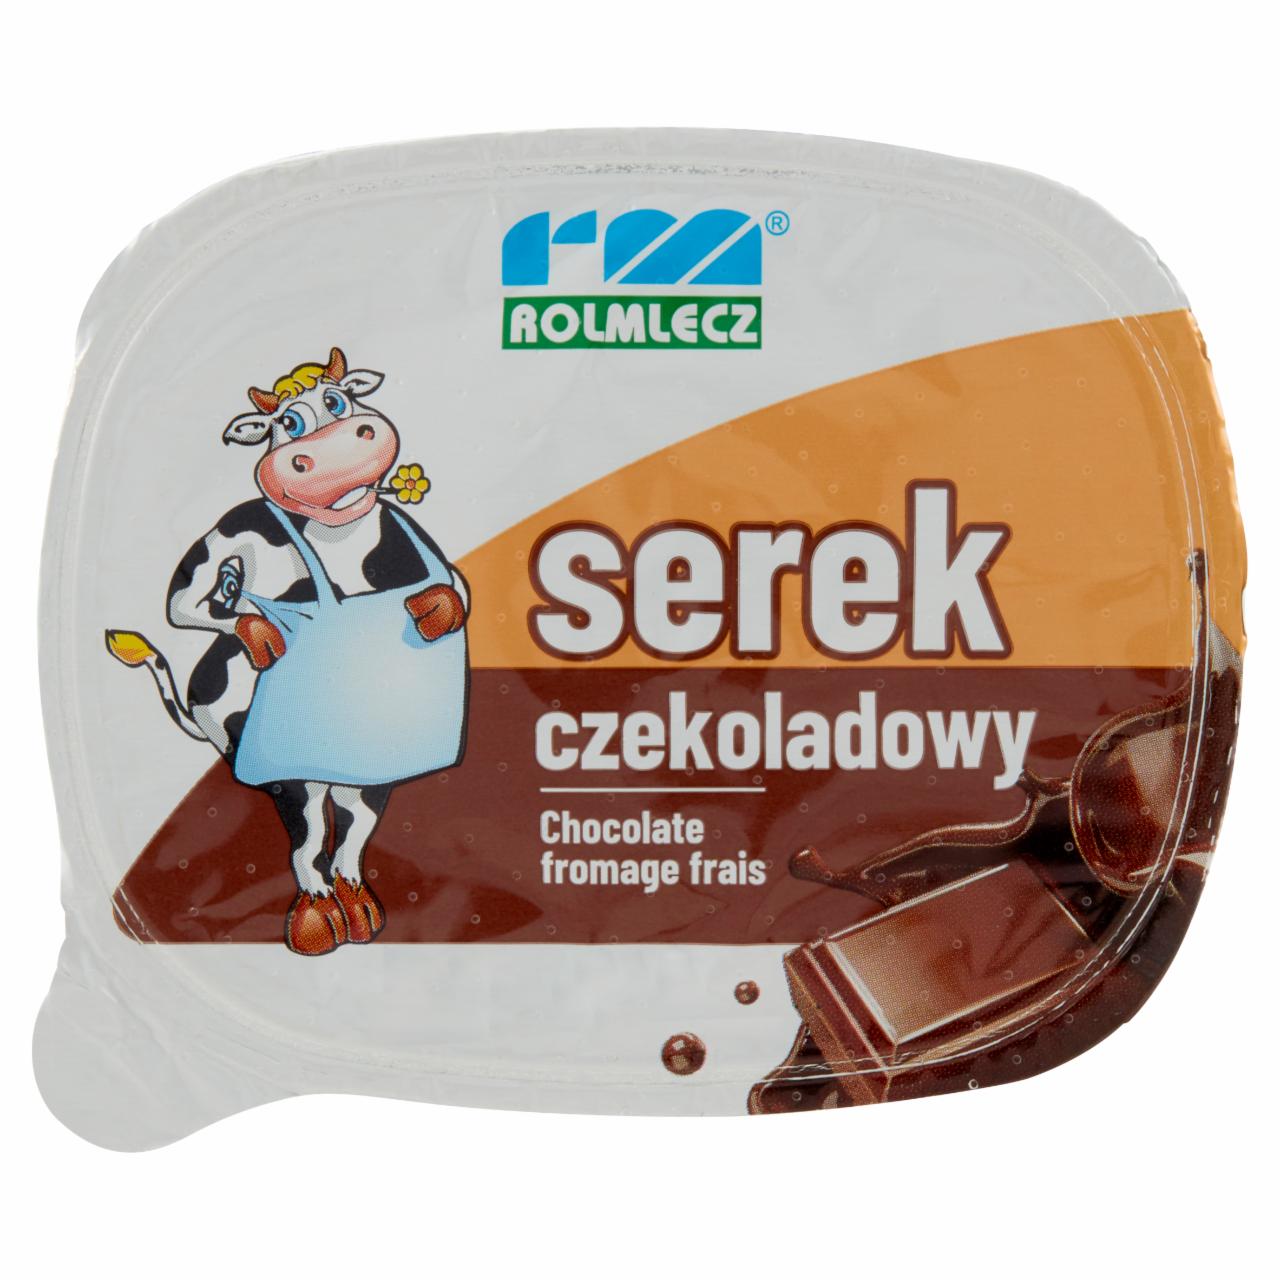 Фото - Сырок шоколадный serek czekoladowy Rolmlecz